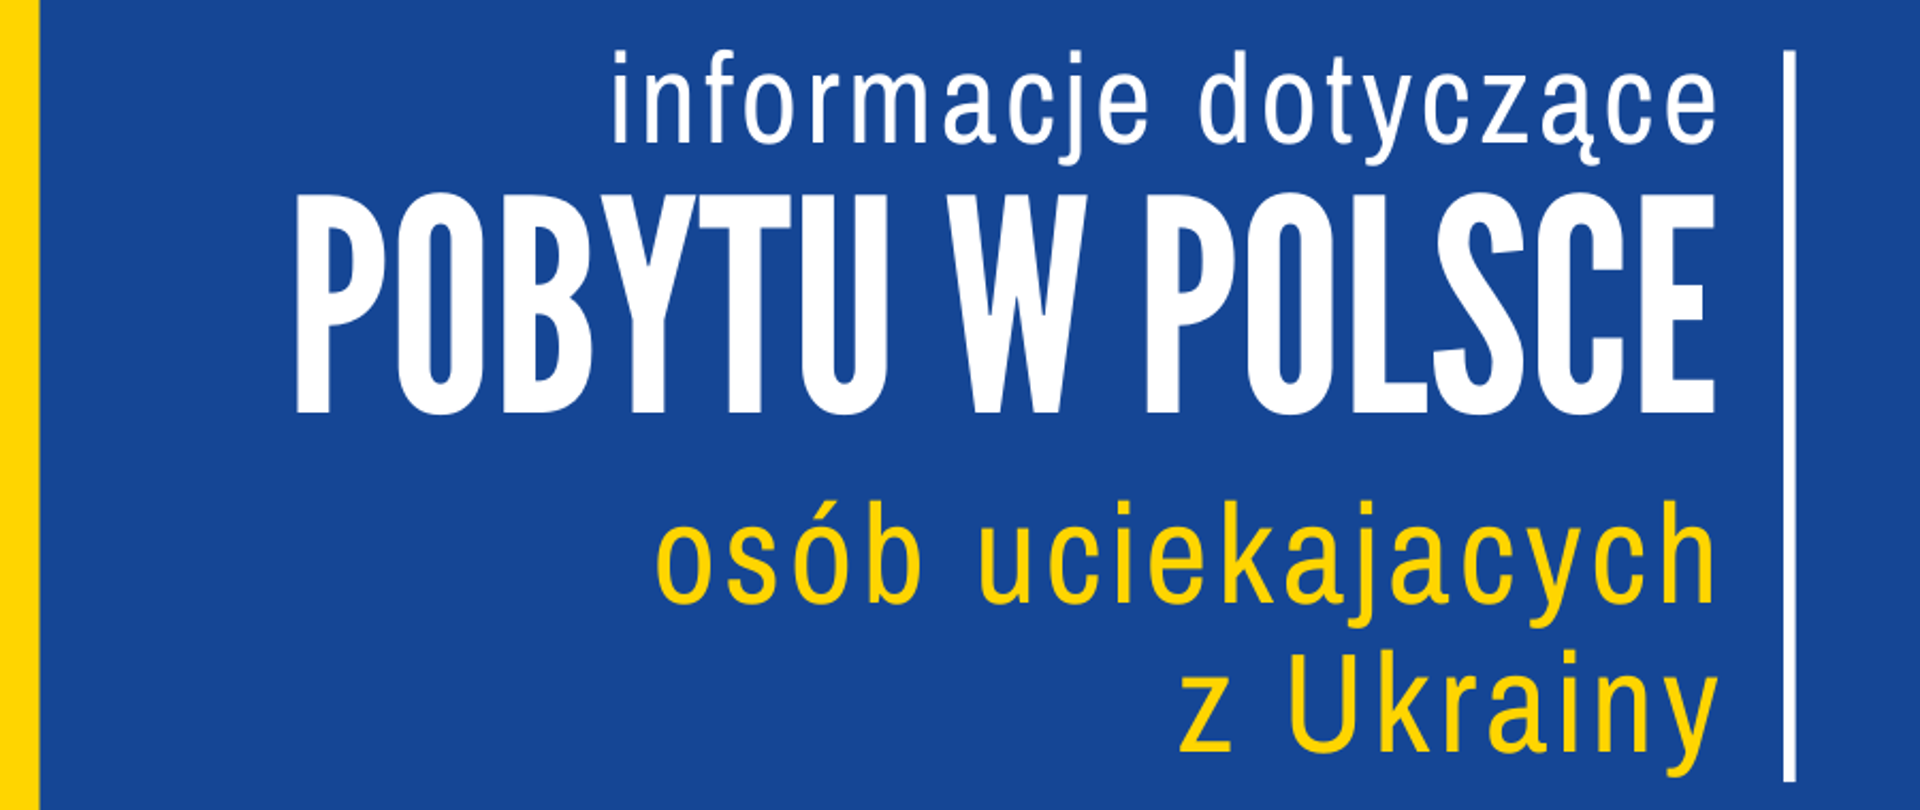 Informacje dotyczące pobytu w Polsce osób uciekających z Ukrainy, Lubelski Urząd Wojewódzki w Lublinie, Godło Polski na niebieskim tle